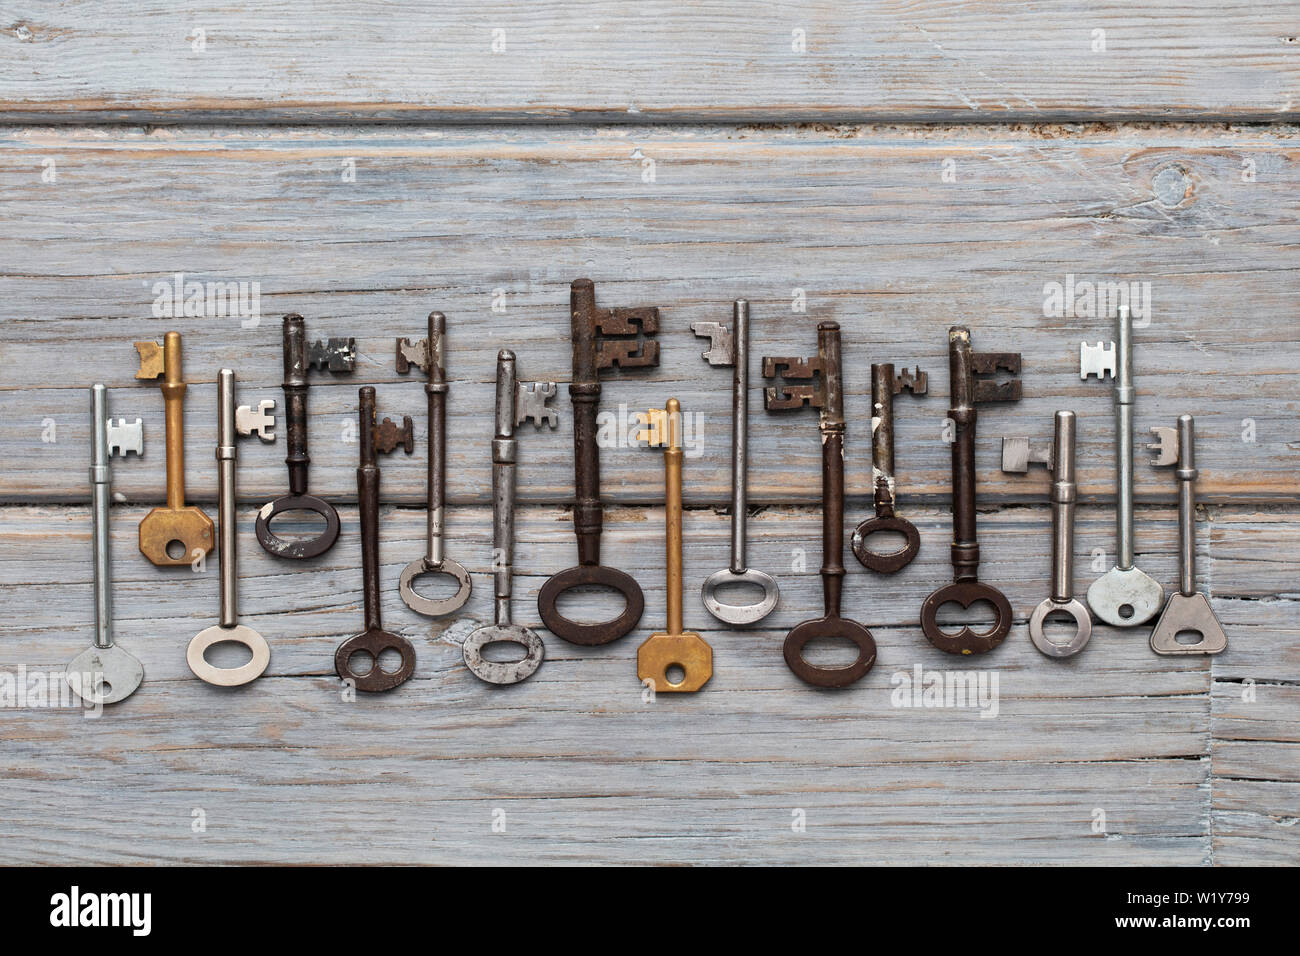 Vintage old fashioned keys sur un fond de bois rustique. Concept de sécurité Banque D'Images